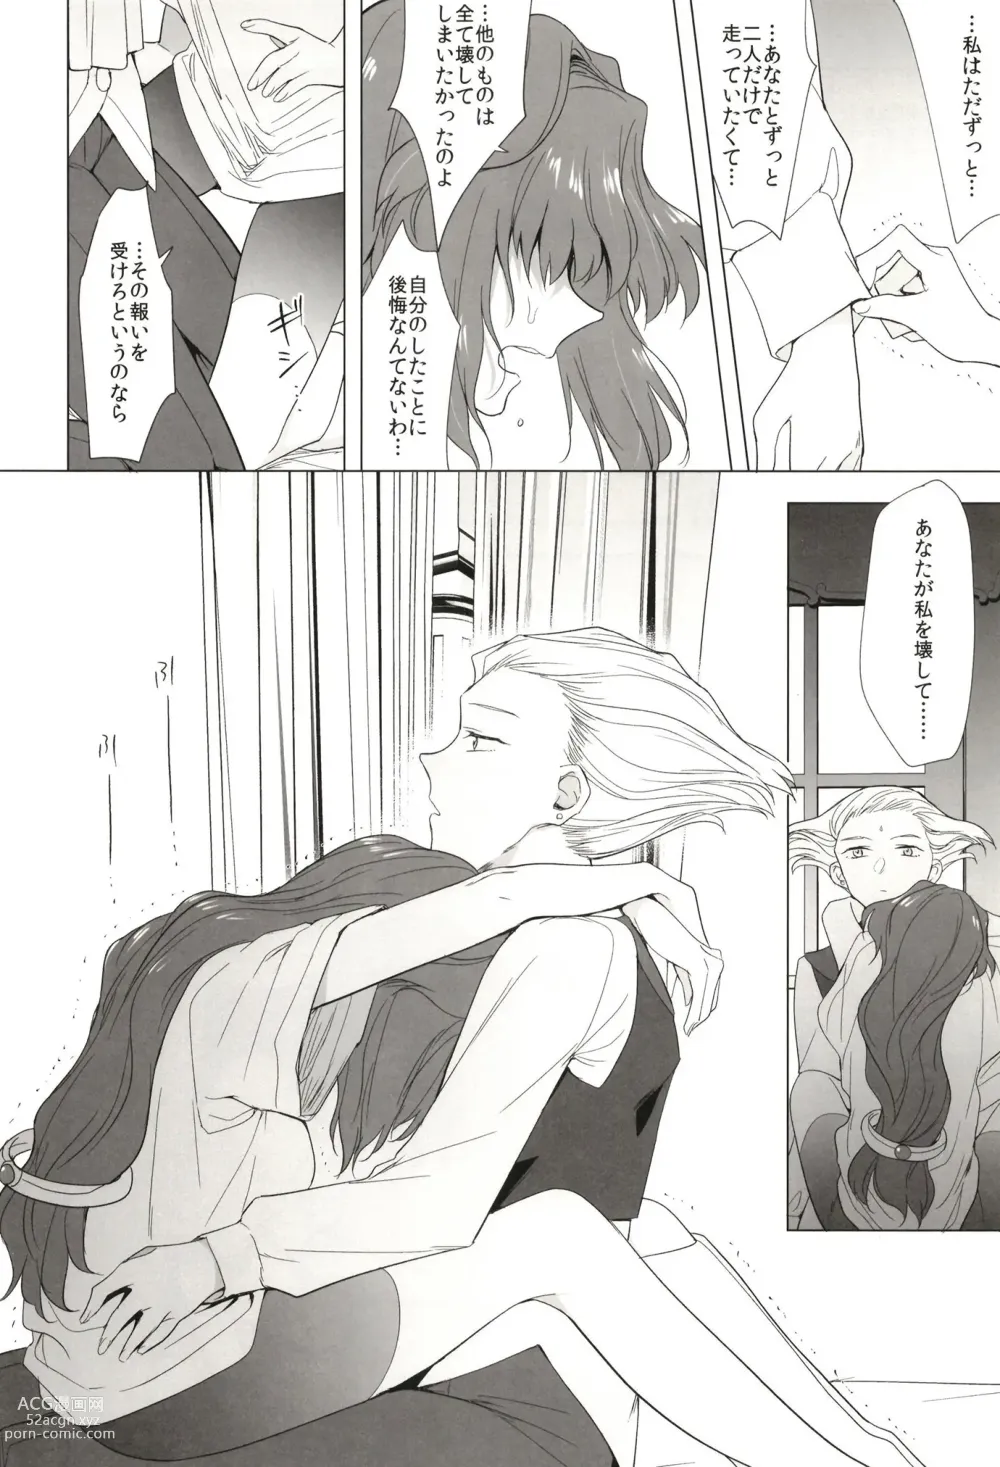 Page 26 of doujinshi Seireki 5000-nen no bouji